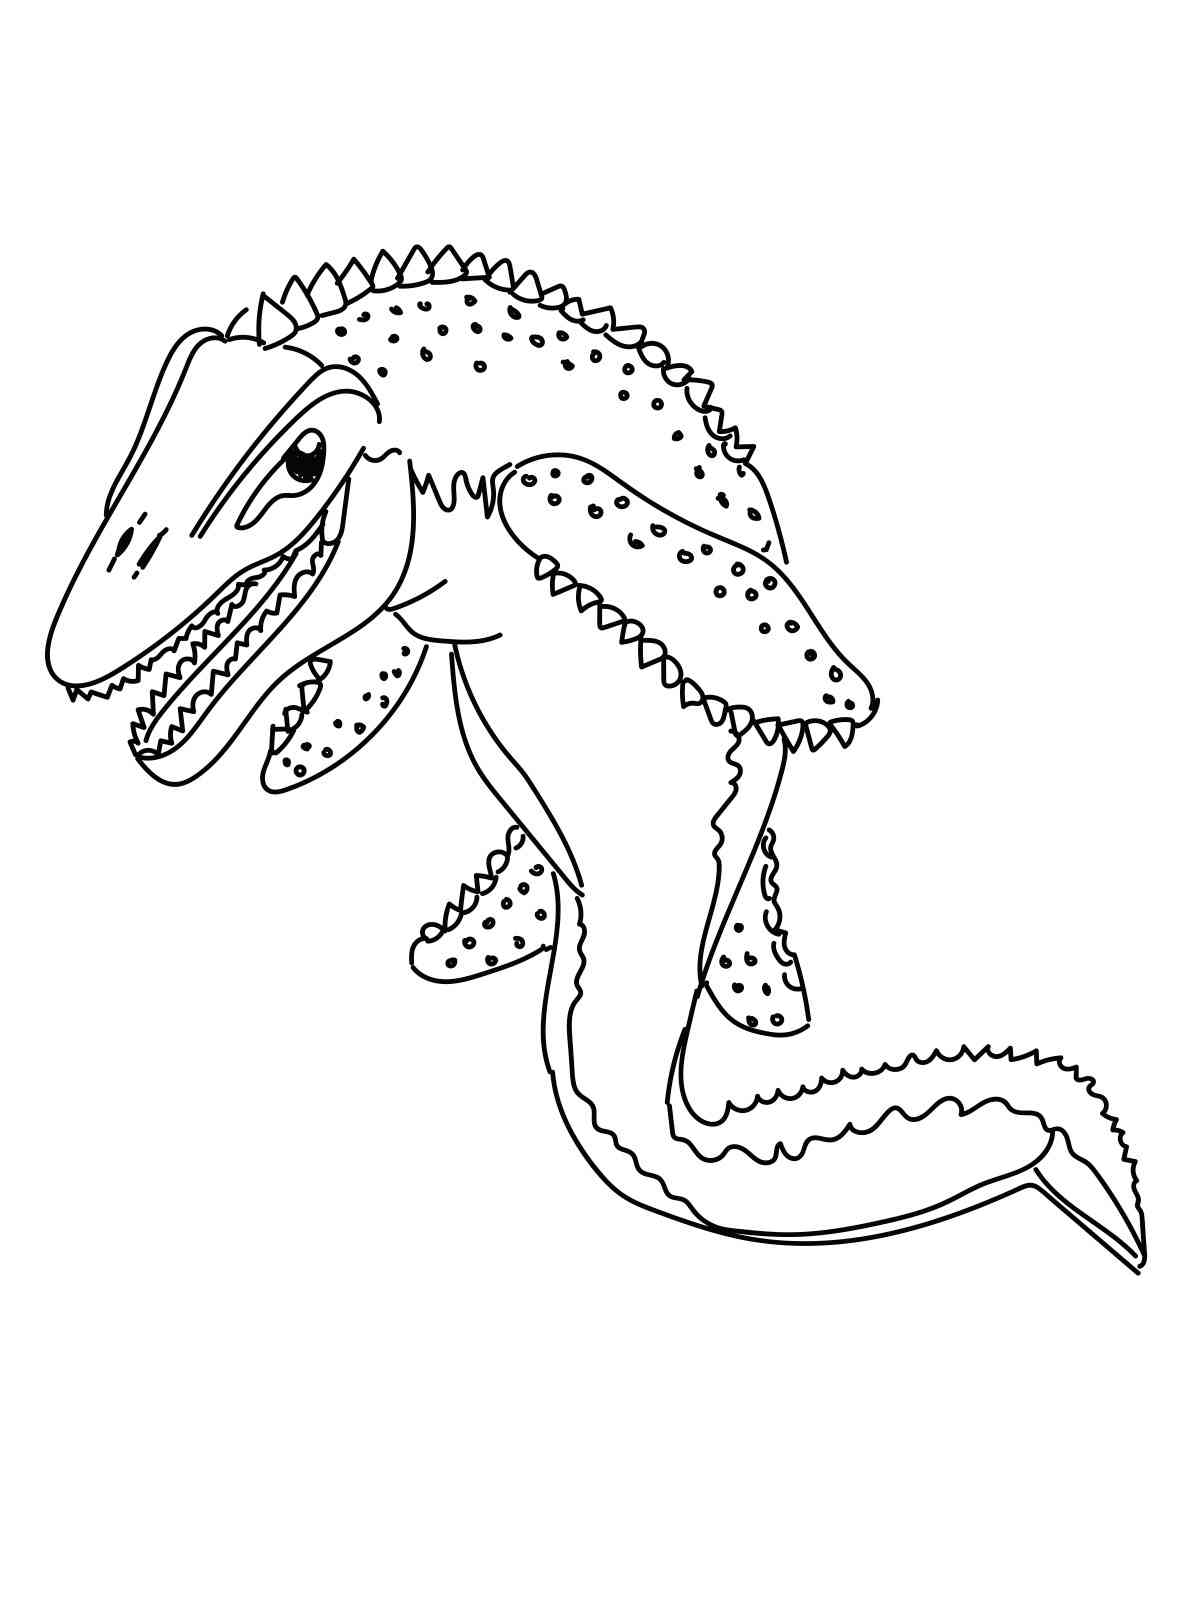 Jurassic Mosasaurus coloring page